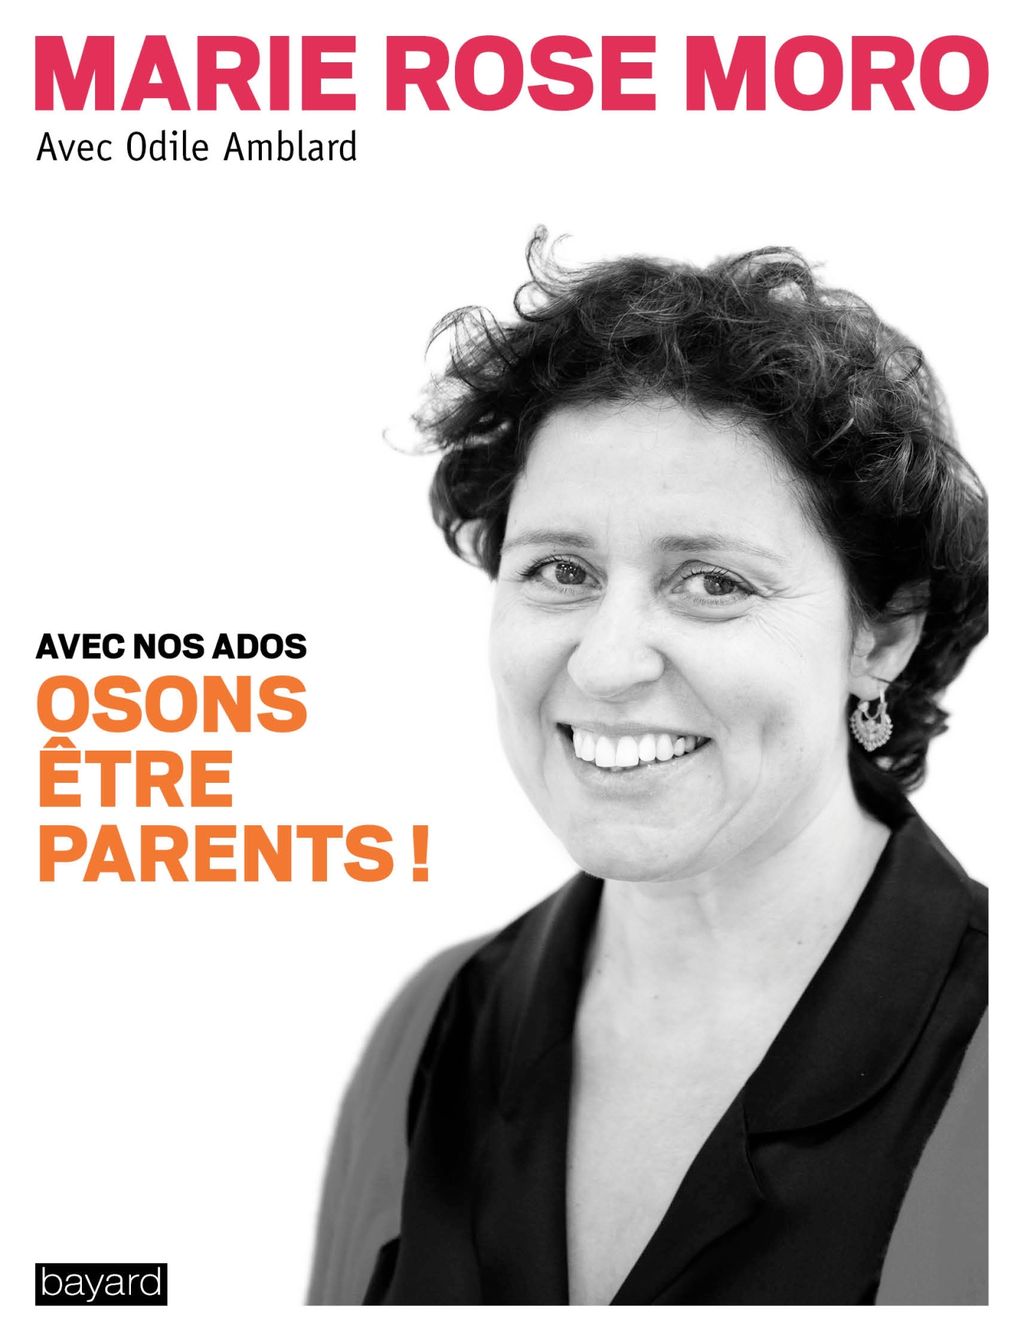 « Osons être parents ! » cover